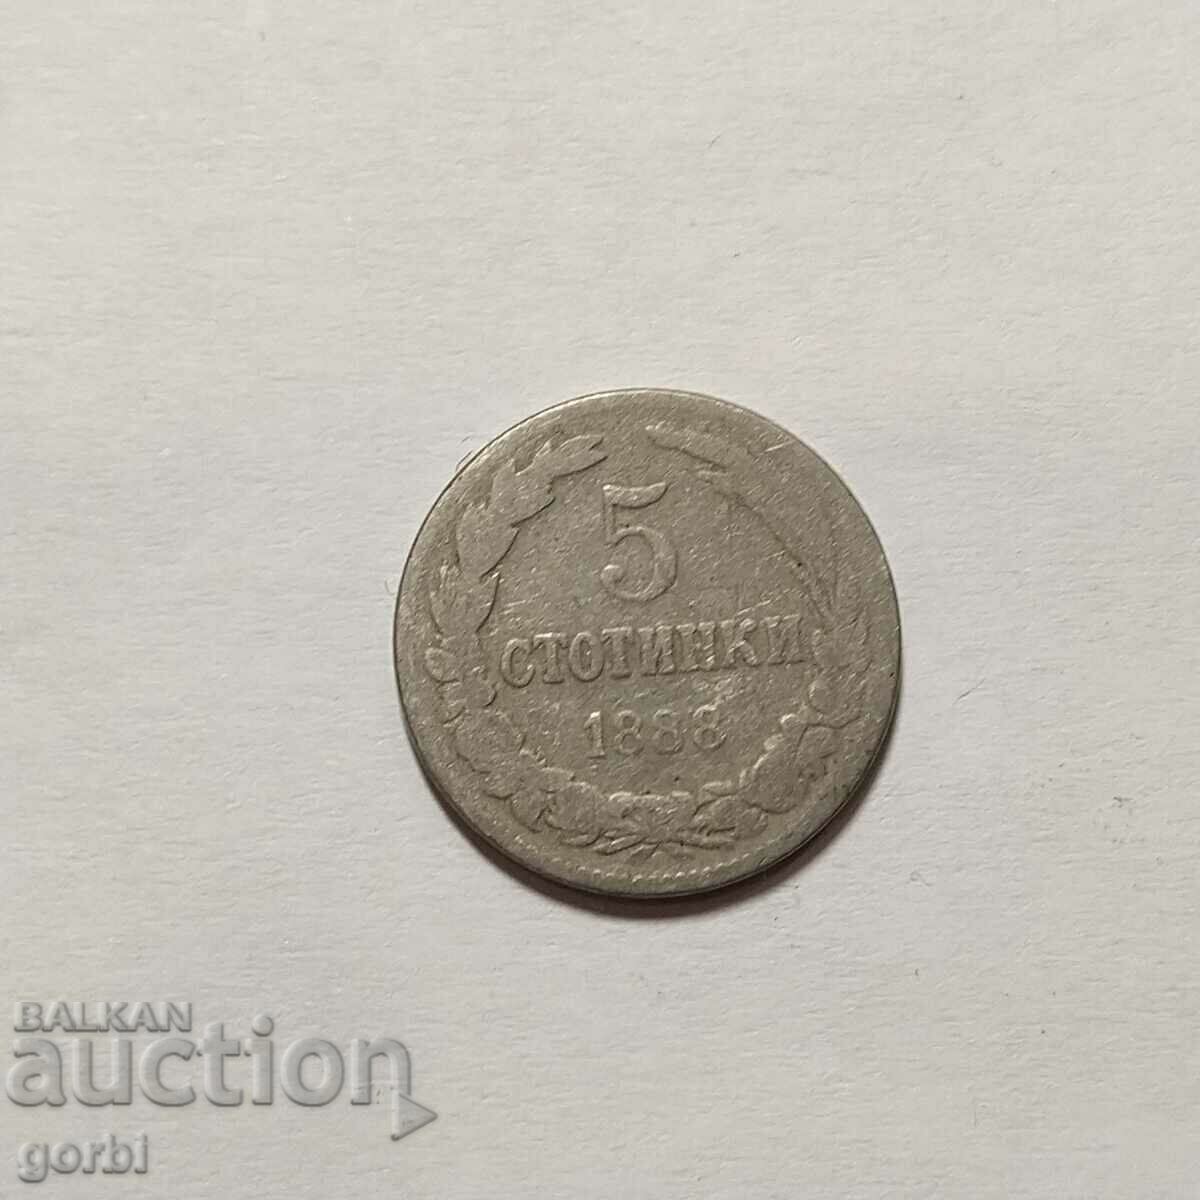 5 cenți 1888